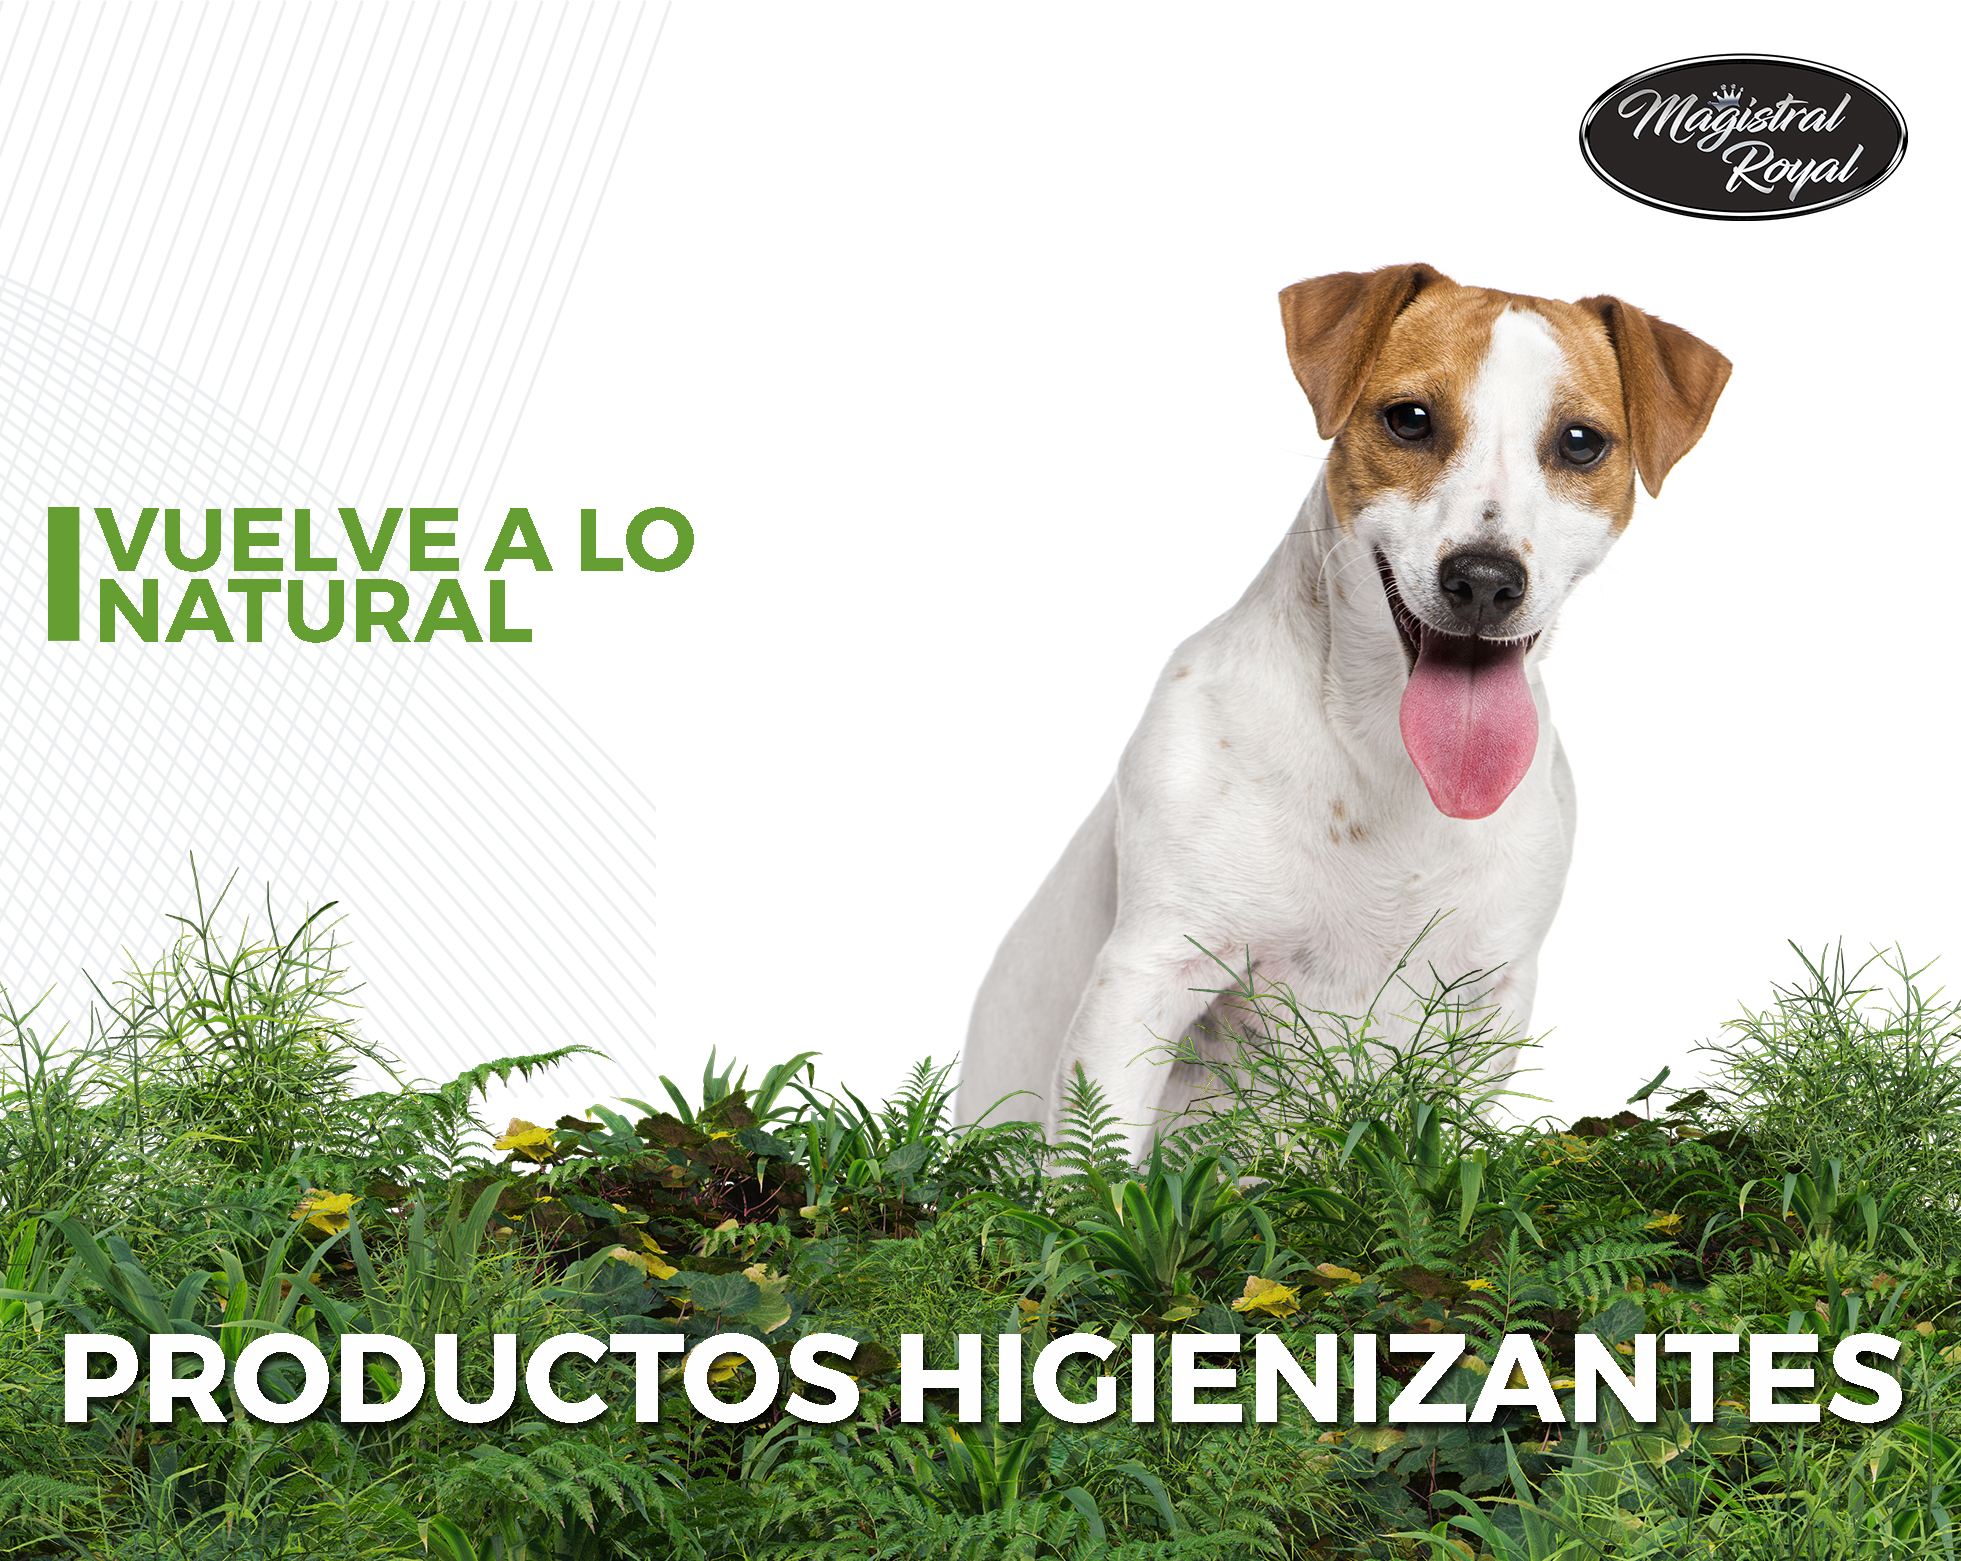 Productos higienizantes para mascotas, peluquerías caninas y centros veterinarios